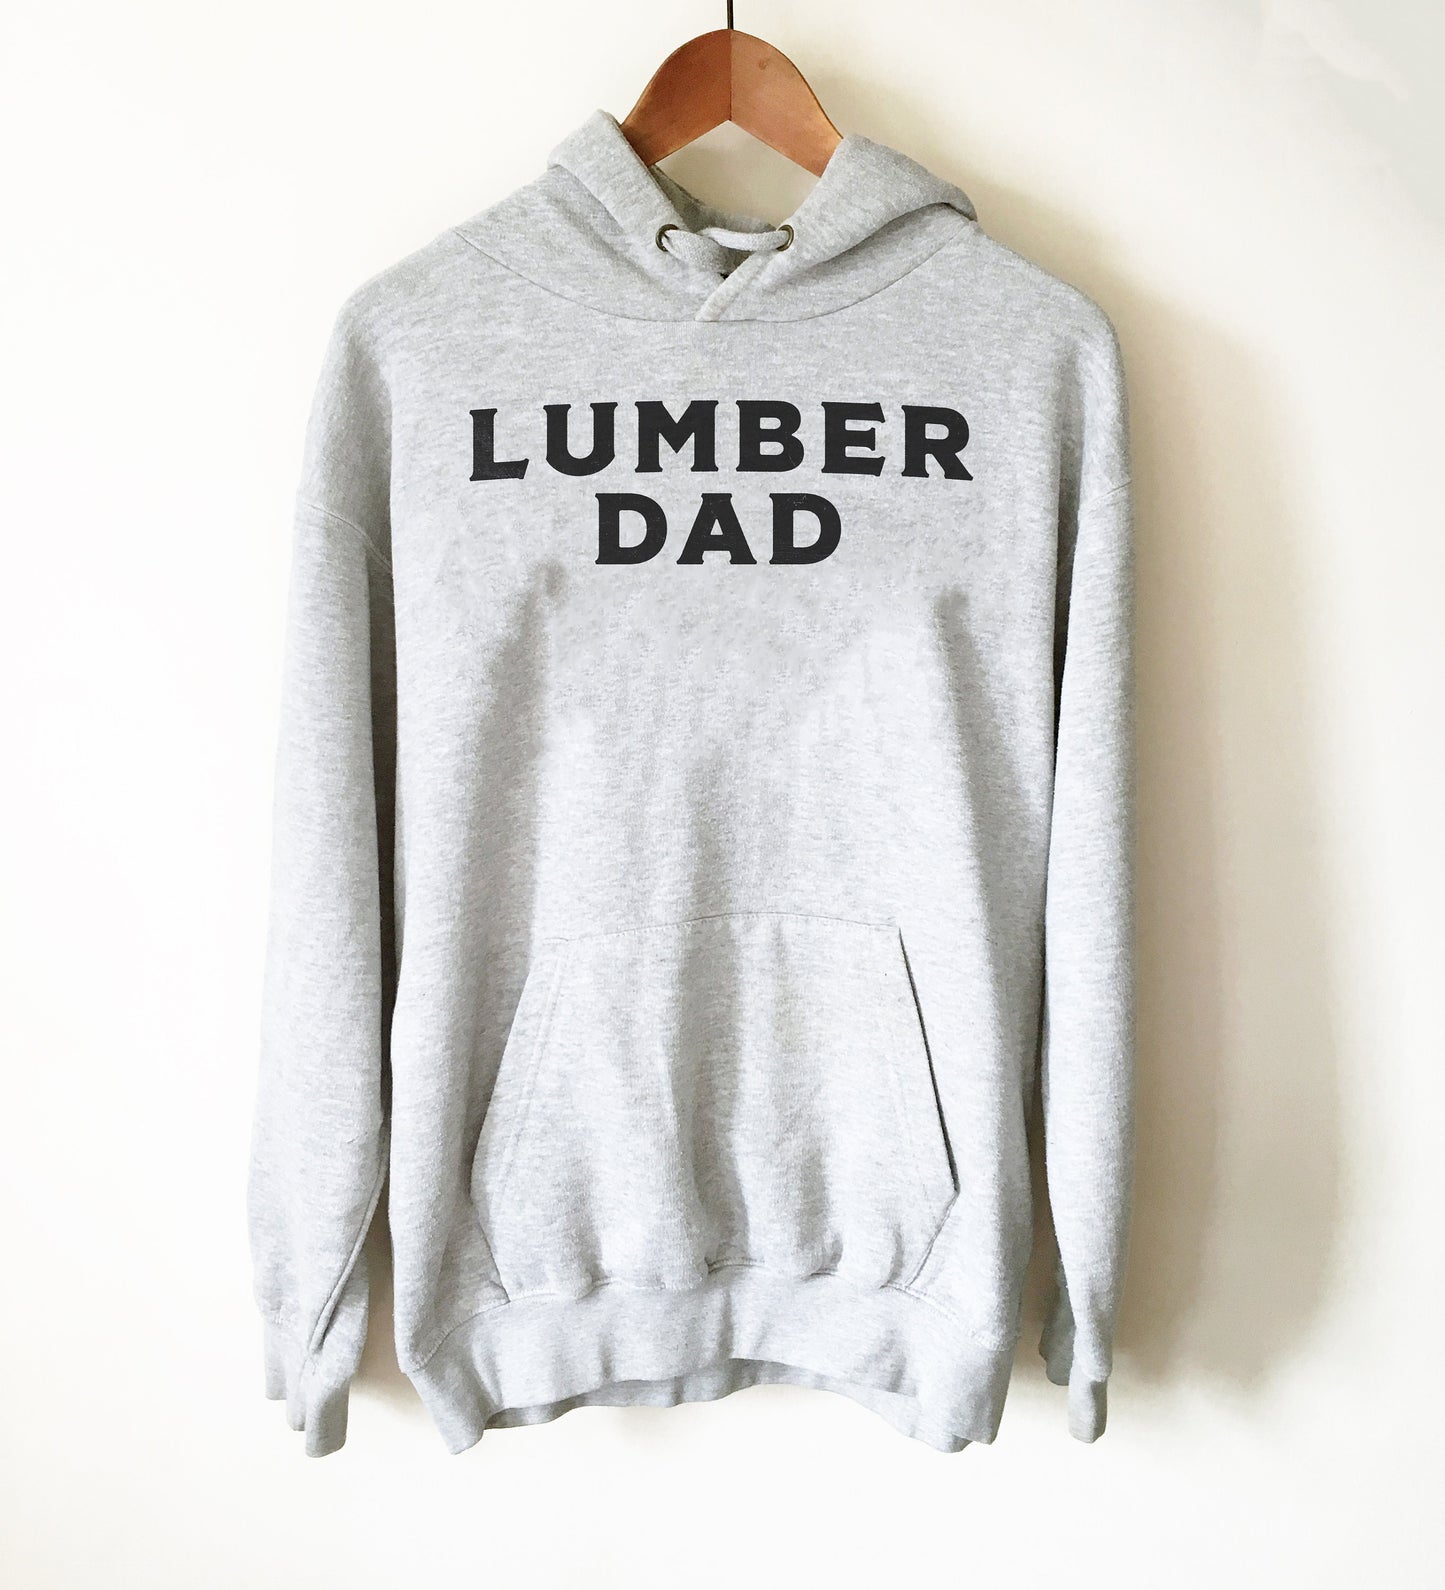 Lumberjack Hoodie - Gift For Dad, Lumberjack Shirt, Dude Shirt, Lumberjack Birthday, Tree Surgeon Gift, Logging Shirt, Forest Shirt, Hipster